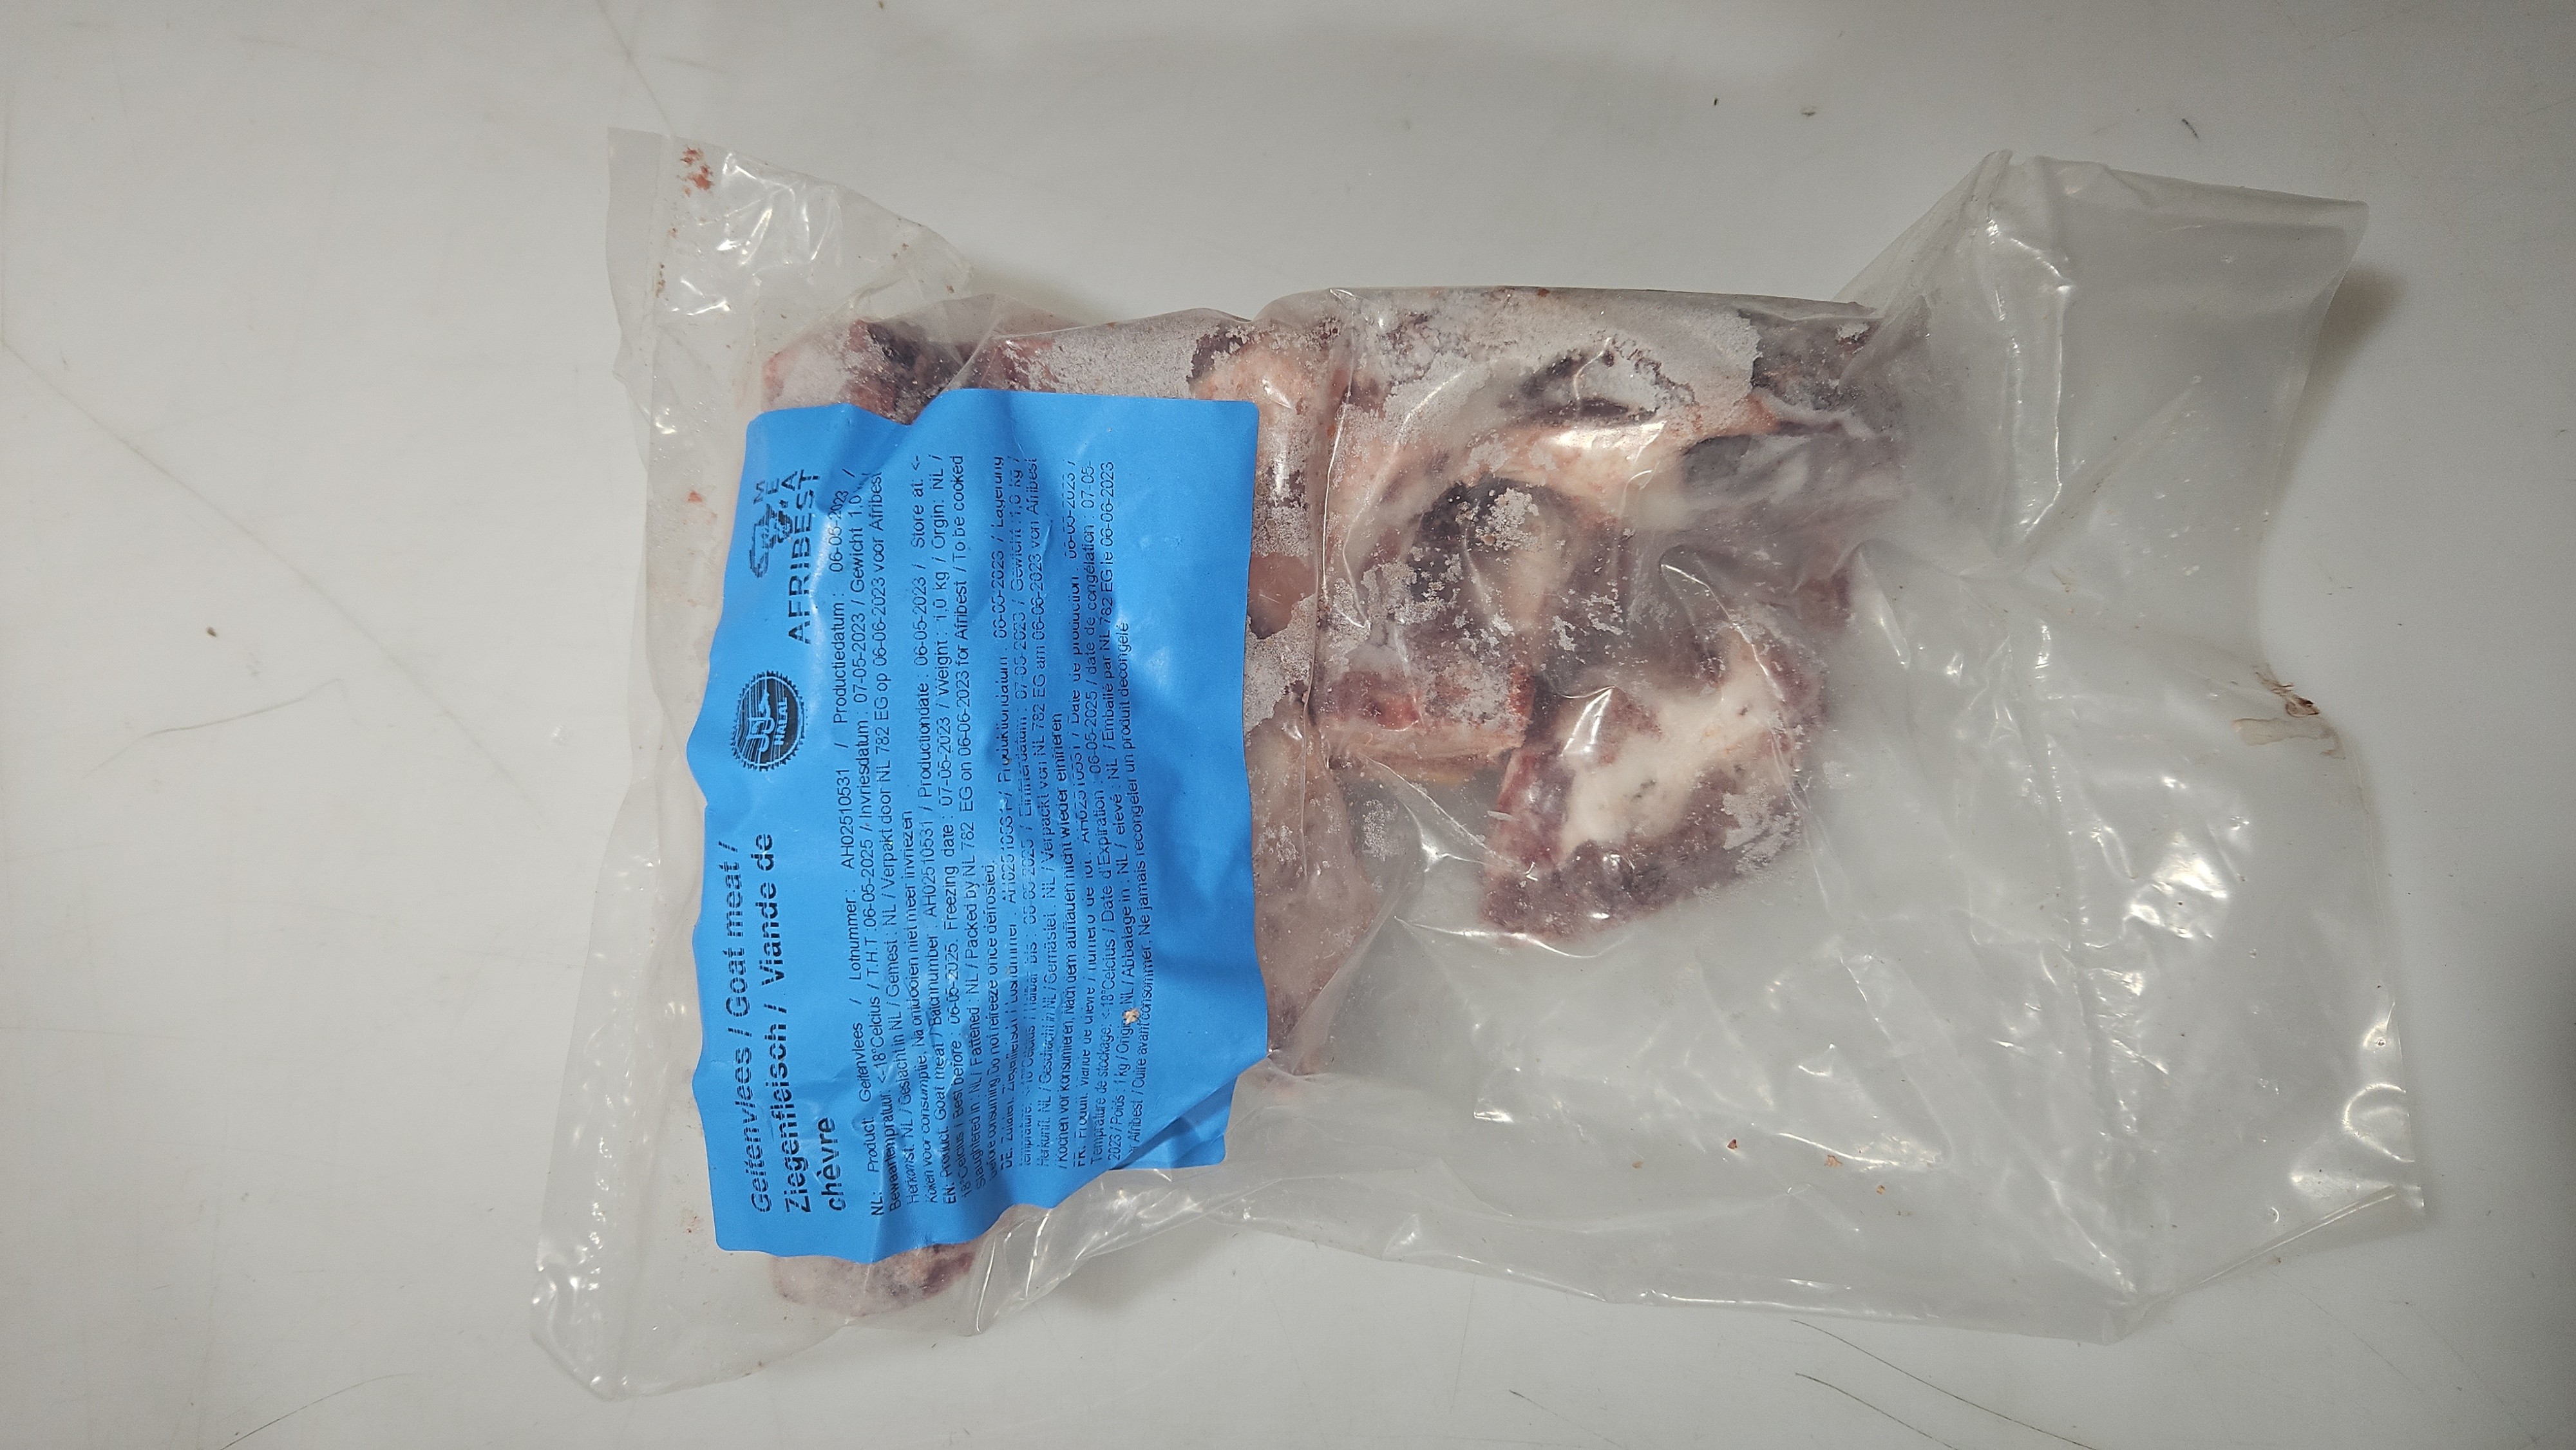 Goat Meat Afribest 10 x 1 kilo-NL